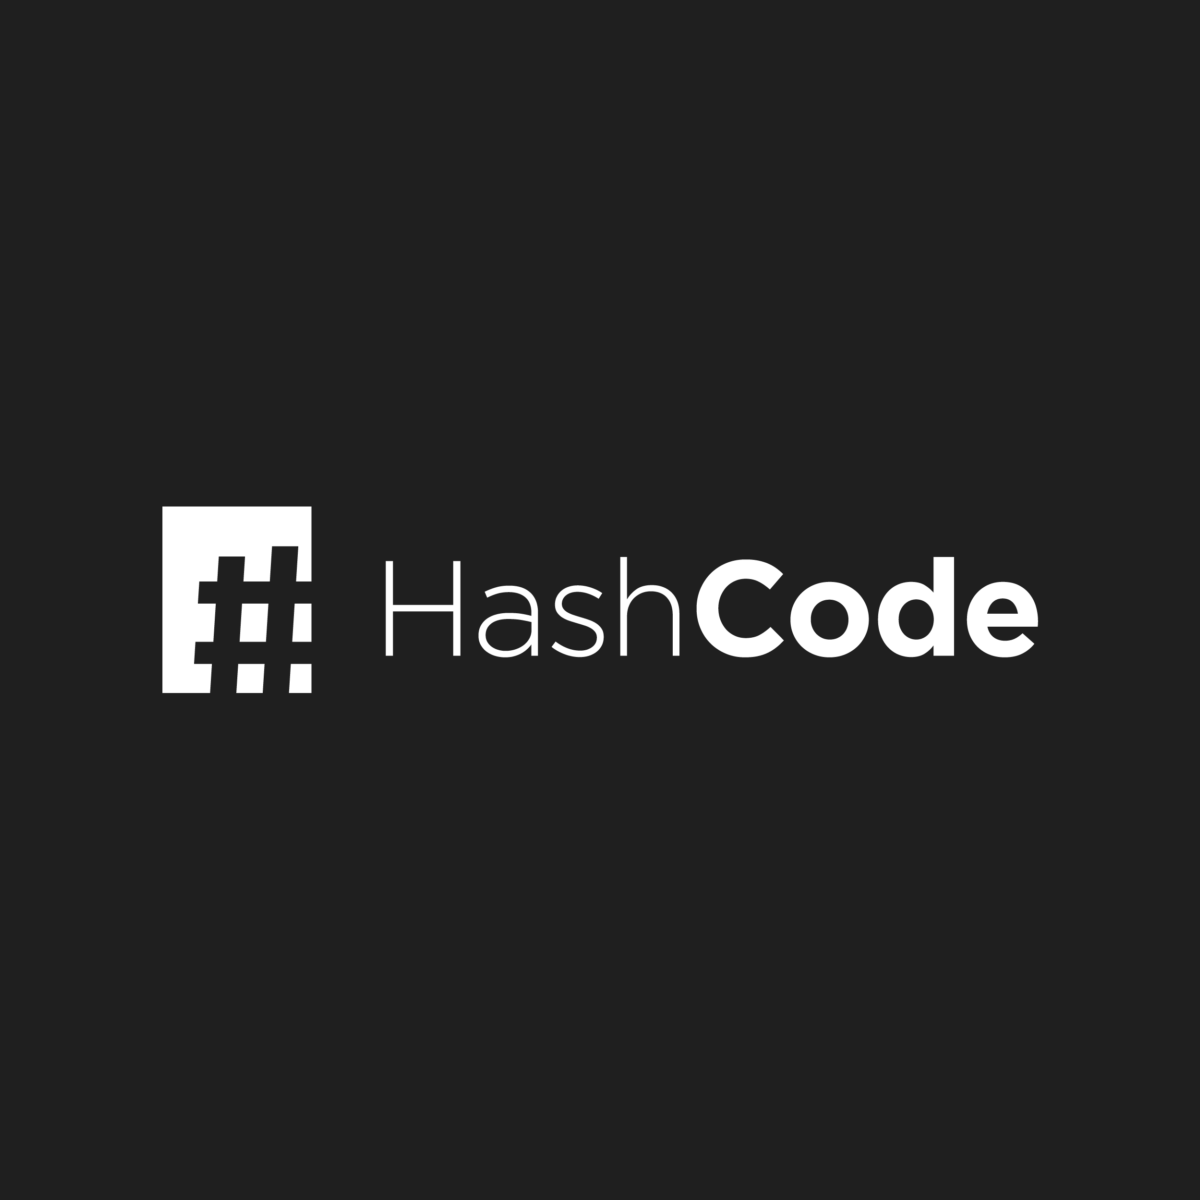 HashCode